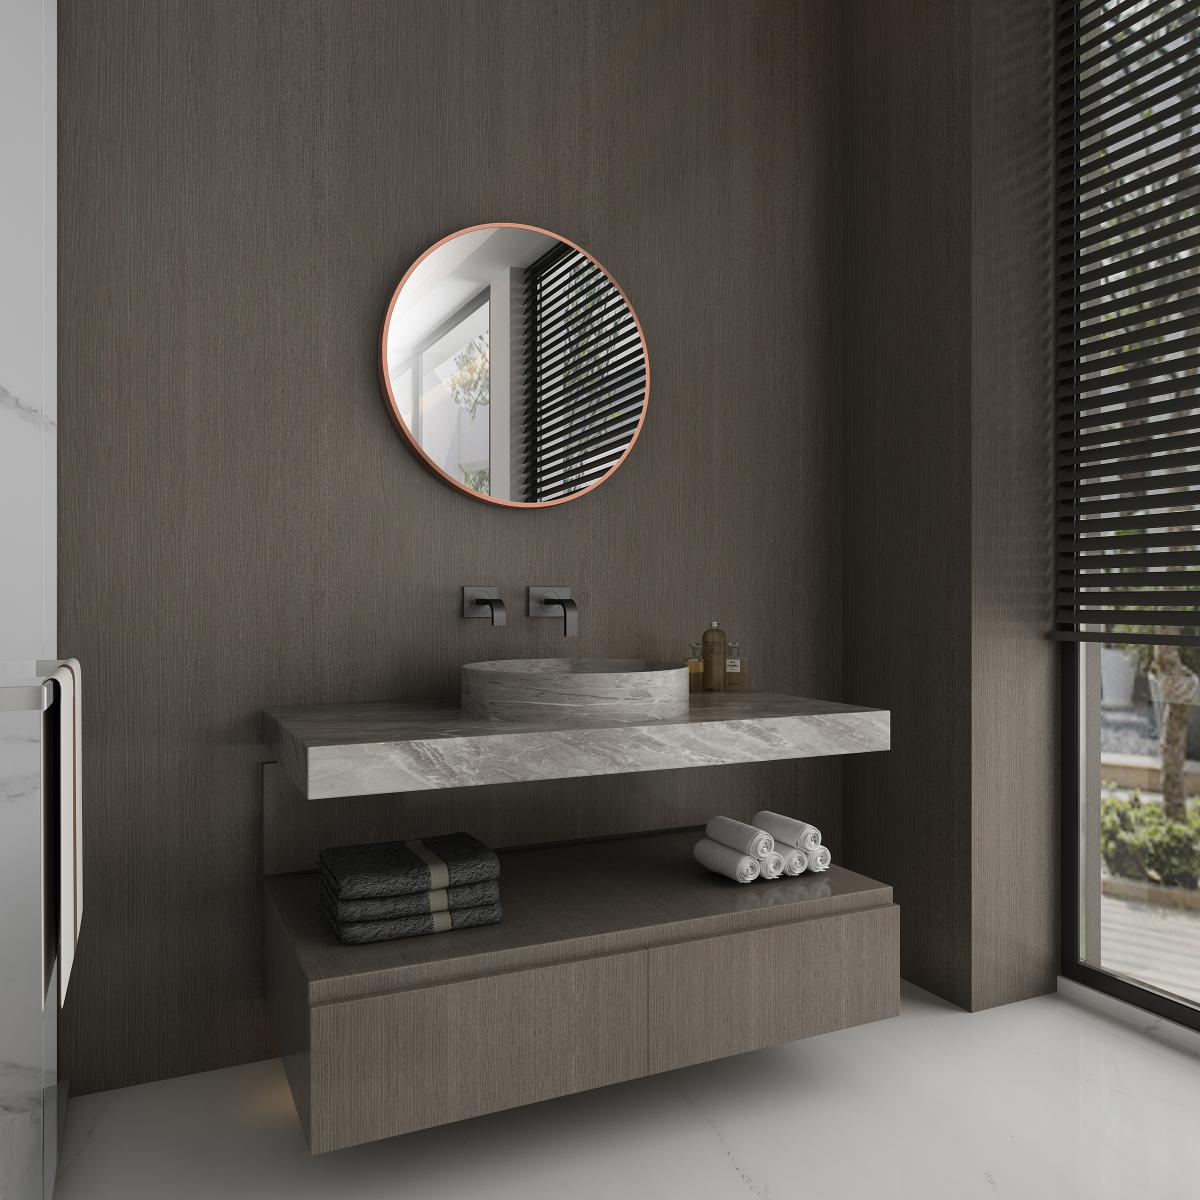 Aurlane - Miroir salle de bain circulaire 60cm de diametre - finition cuivre - RING BRASSY 60 - Miroir de salle de bain